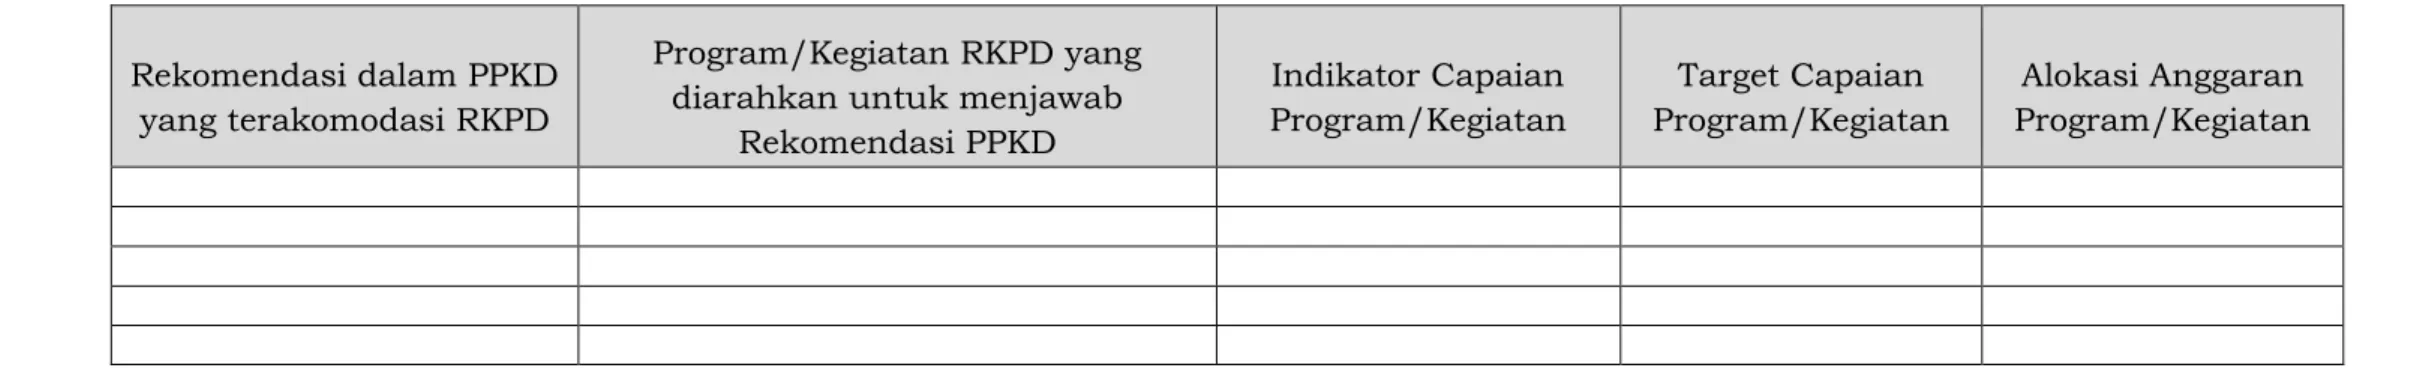 Tabel B.2 Pemetaan Rekomendasi PPKD terhadap RKPD Provinsi 